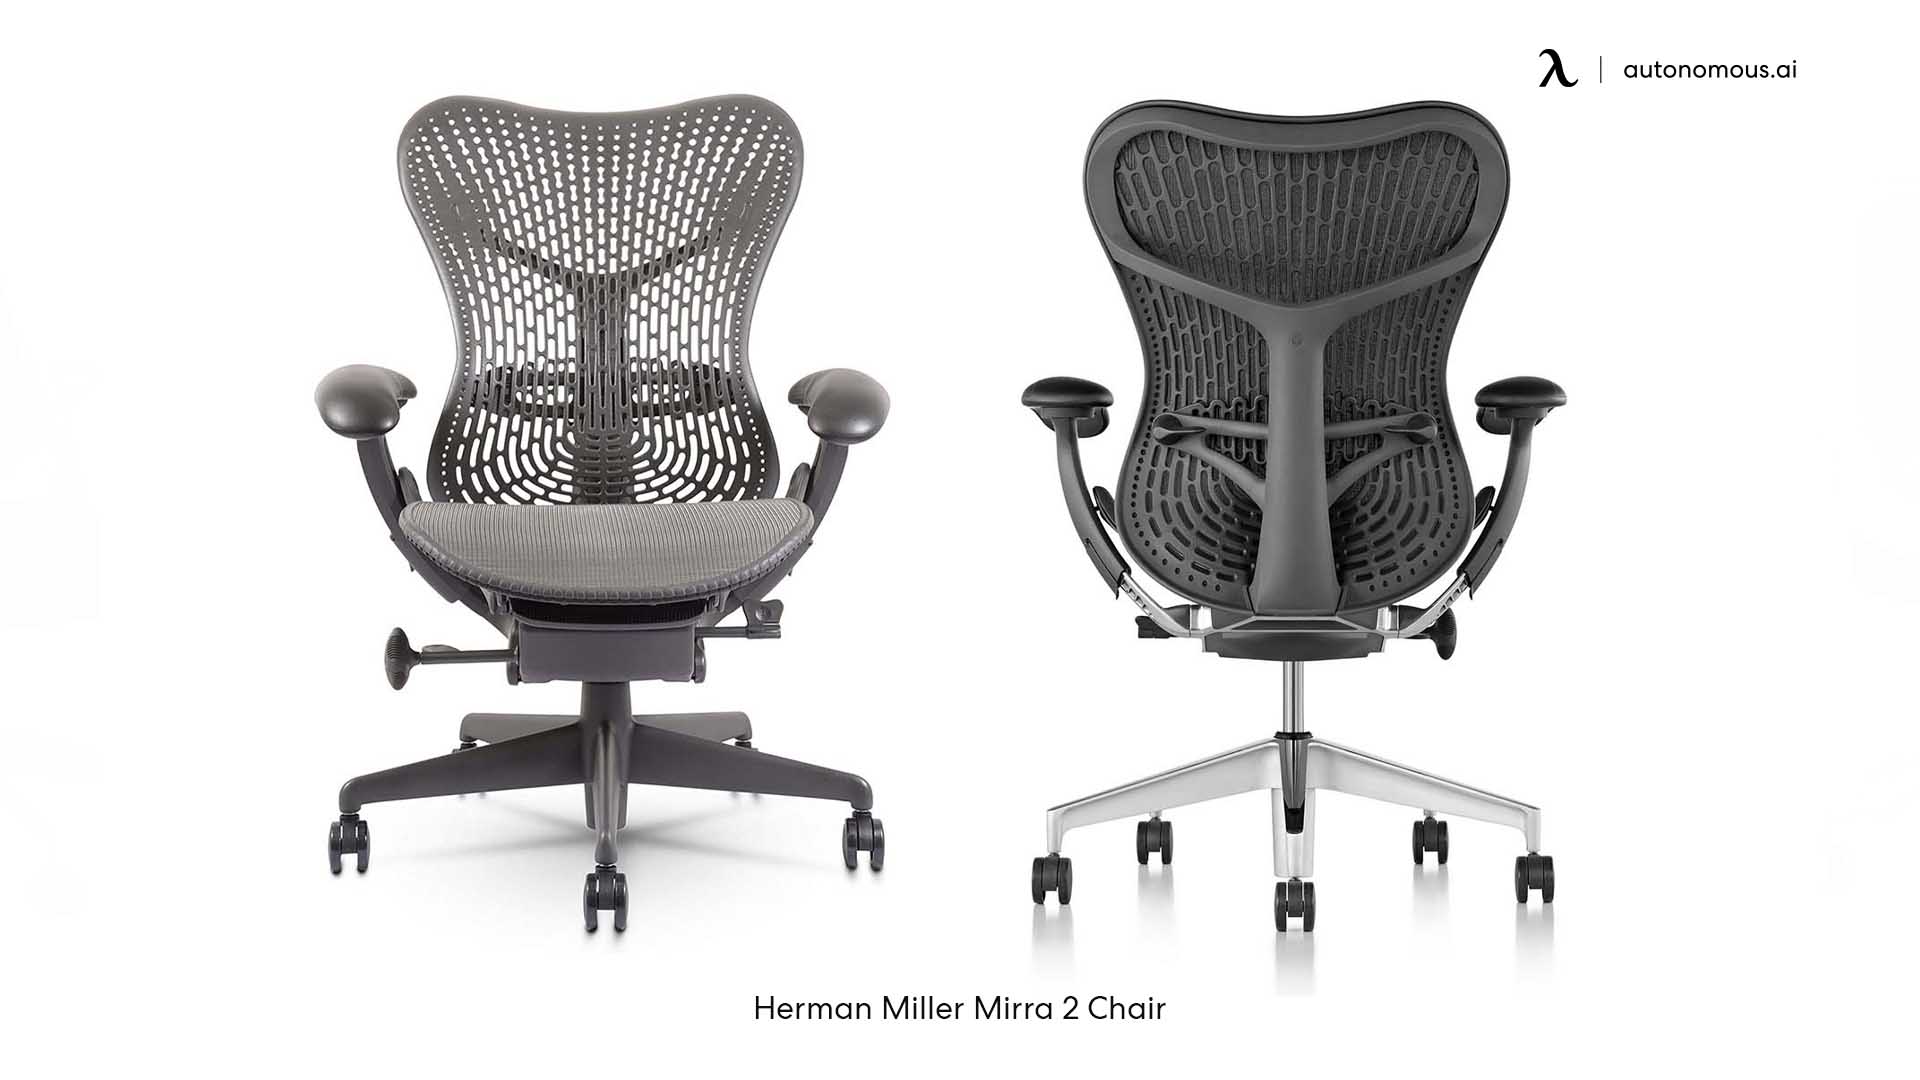 Herman Miller Mirra 2 24-hour chair